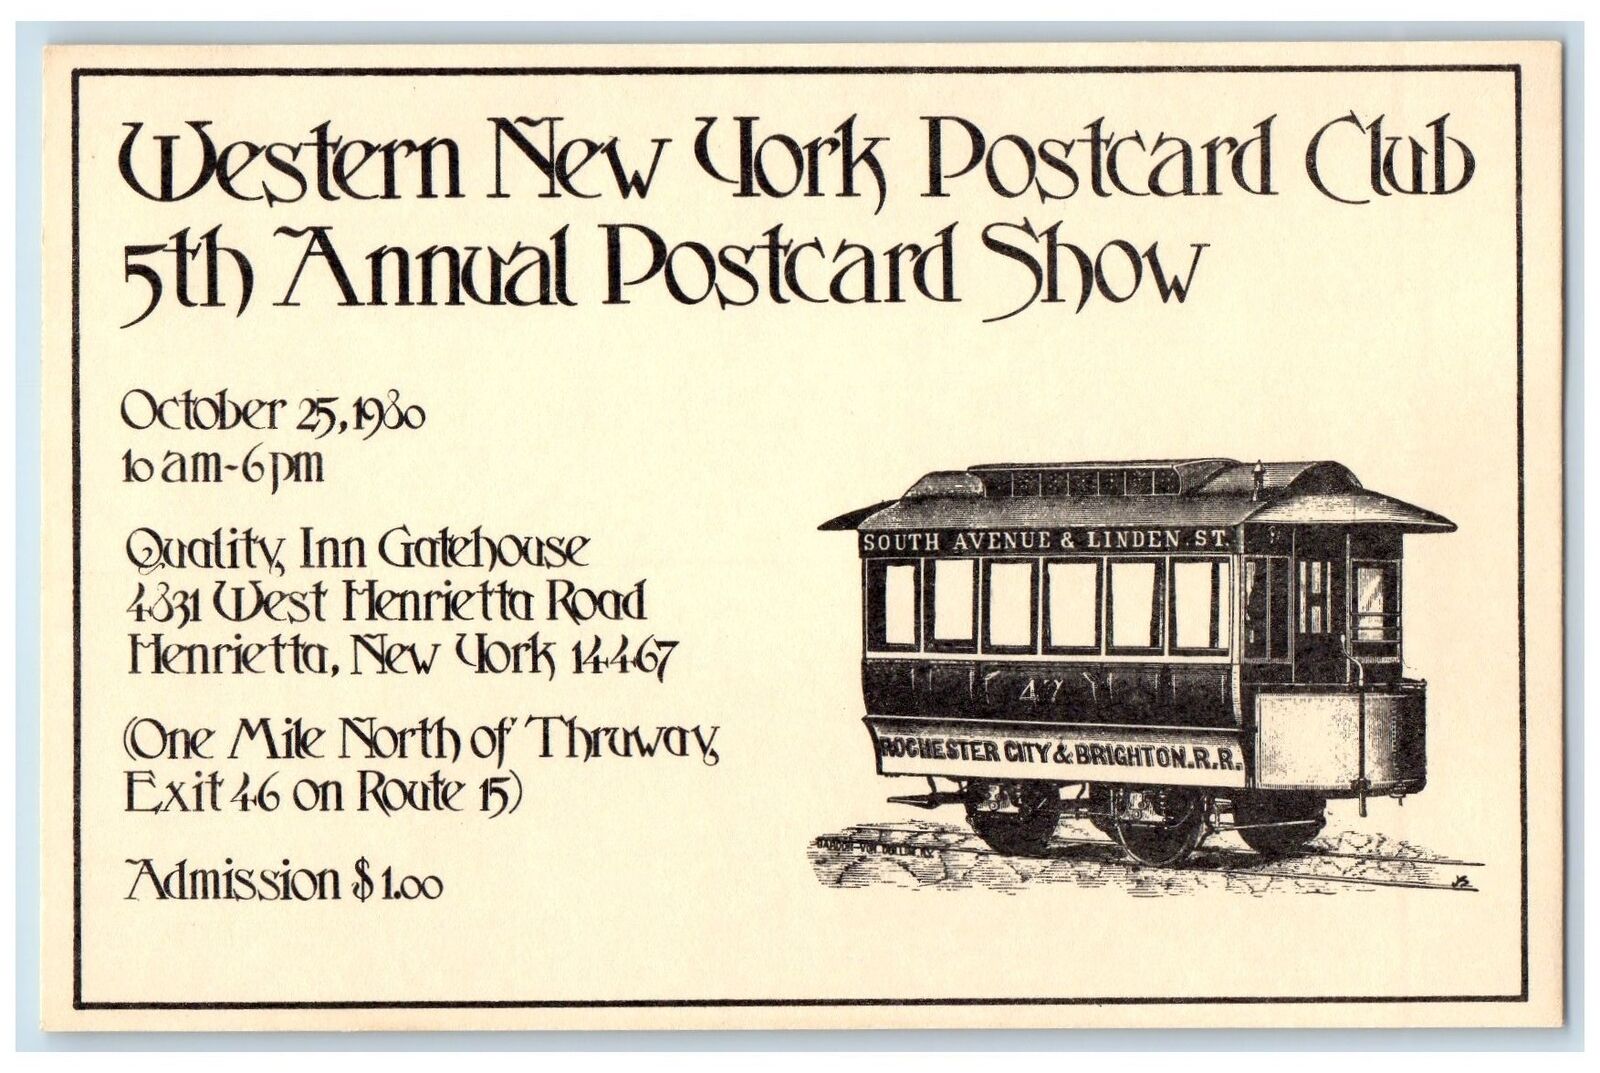 c1905 Western New York Postcard Club, Rochester City And Brighton R.R Train